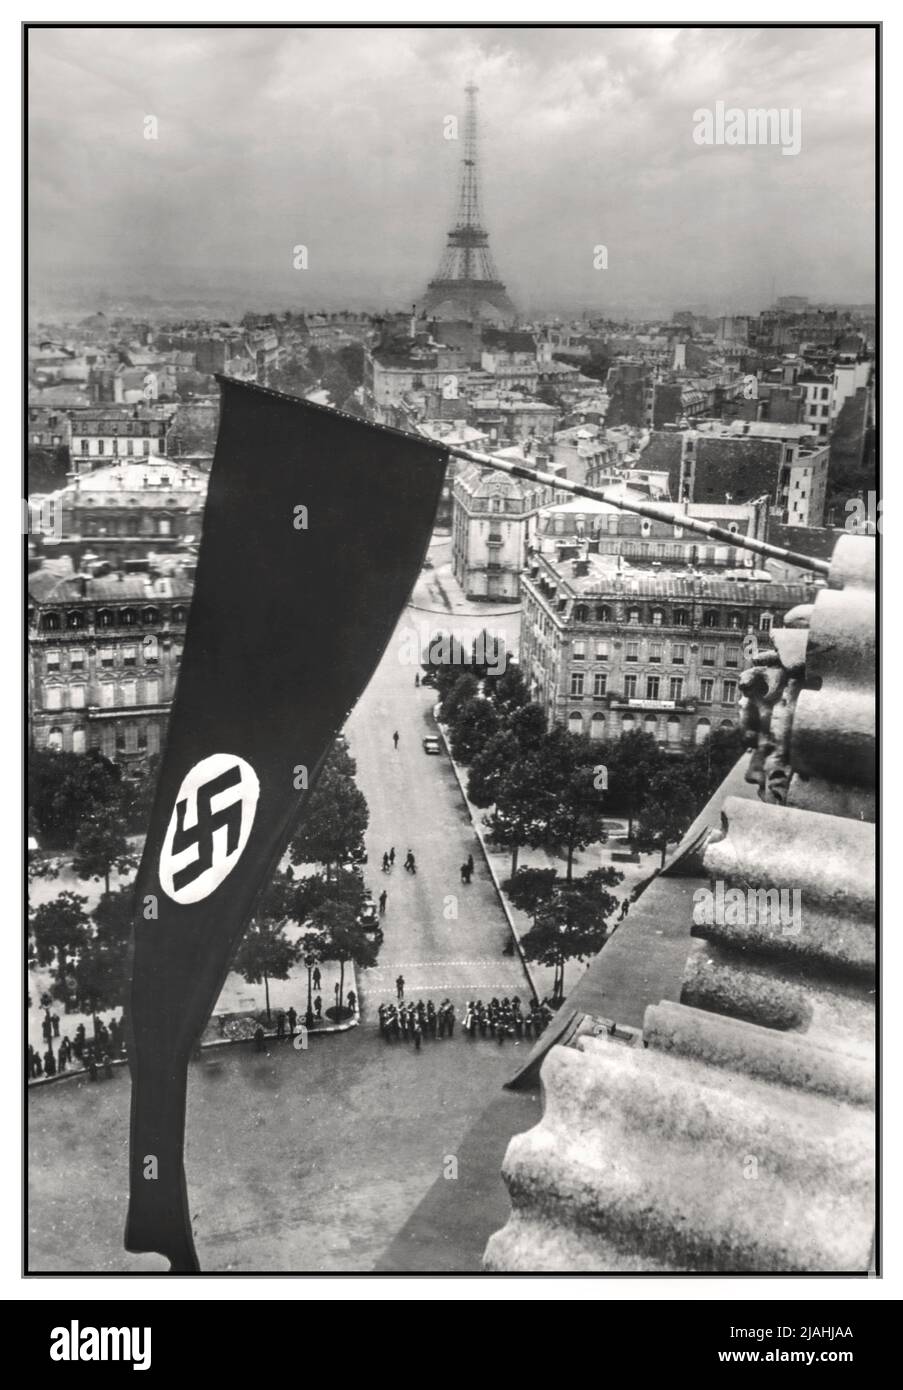 PARIGI WW2 occupazione nazista Parigi Francia con grande bandiera Swastika che vola su Parigi con la Torre Eiffel dietro Parigi Francia giugno 1940 Parigi iniziò a mobilitarsi per la guerra nel settembre 1939, quando la Germania nazista e l'Unione Sovietica attaccarono la Polonia, Ma il 10 maggio 1940, i tedeschi attaccarono la Francia e sconfissero rapidamente l'esercito francese. Il governo francese partì da Parigi il 10 giugno e i tedeschi occuparono la città il 14 giugno. Durante l'occupazione, il governo francese si trasferì a Vichy, e Parigi fu governata dall'esercito tedesco nazista e da funzionari francesi approvati dai tedeschi. Foto Stock